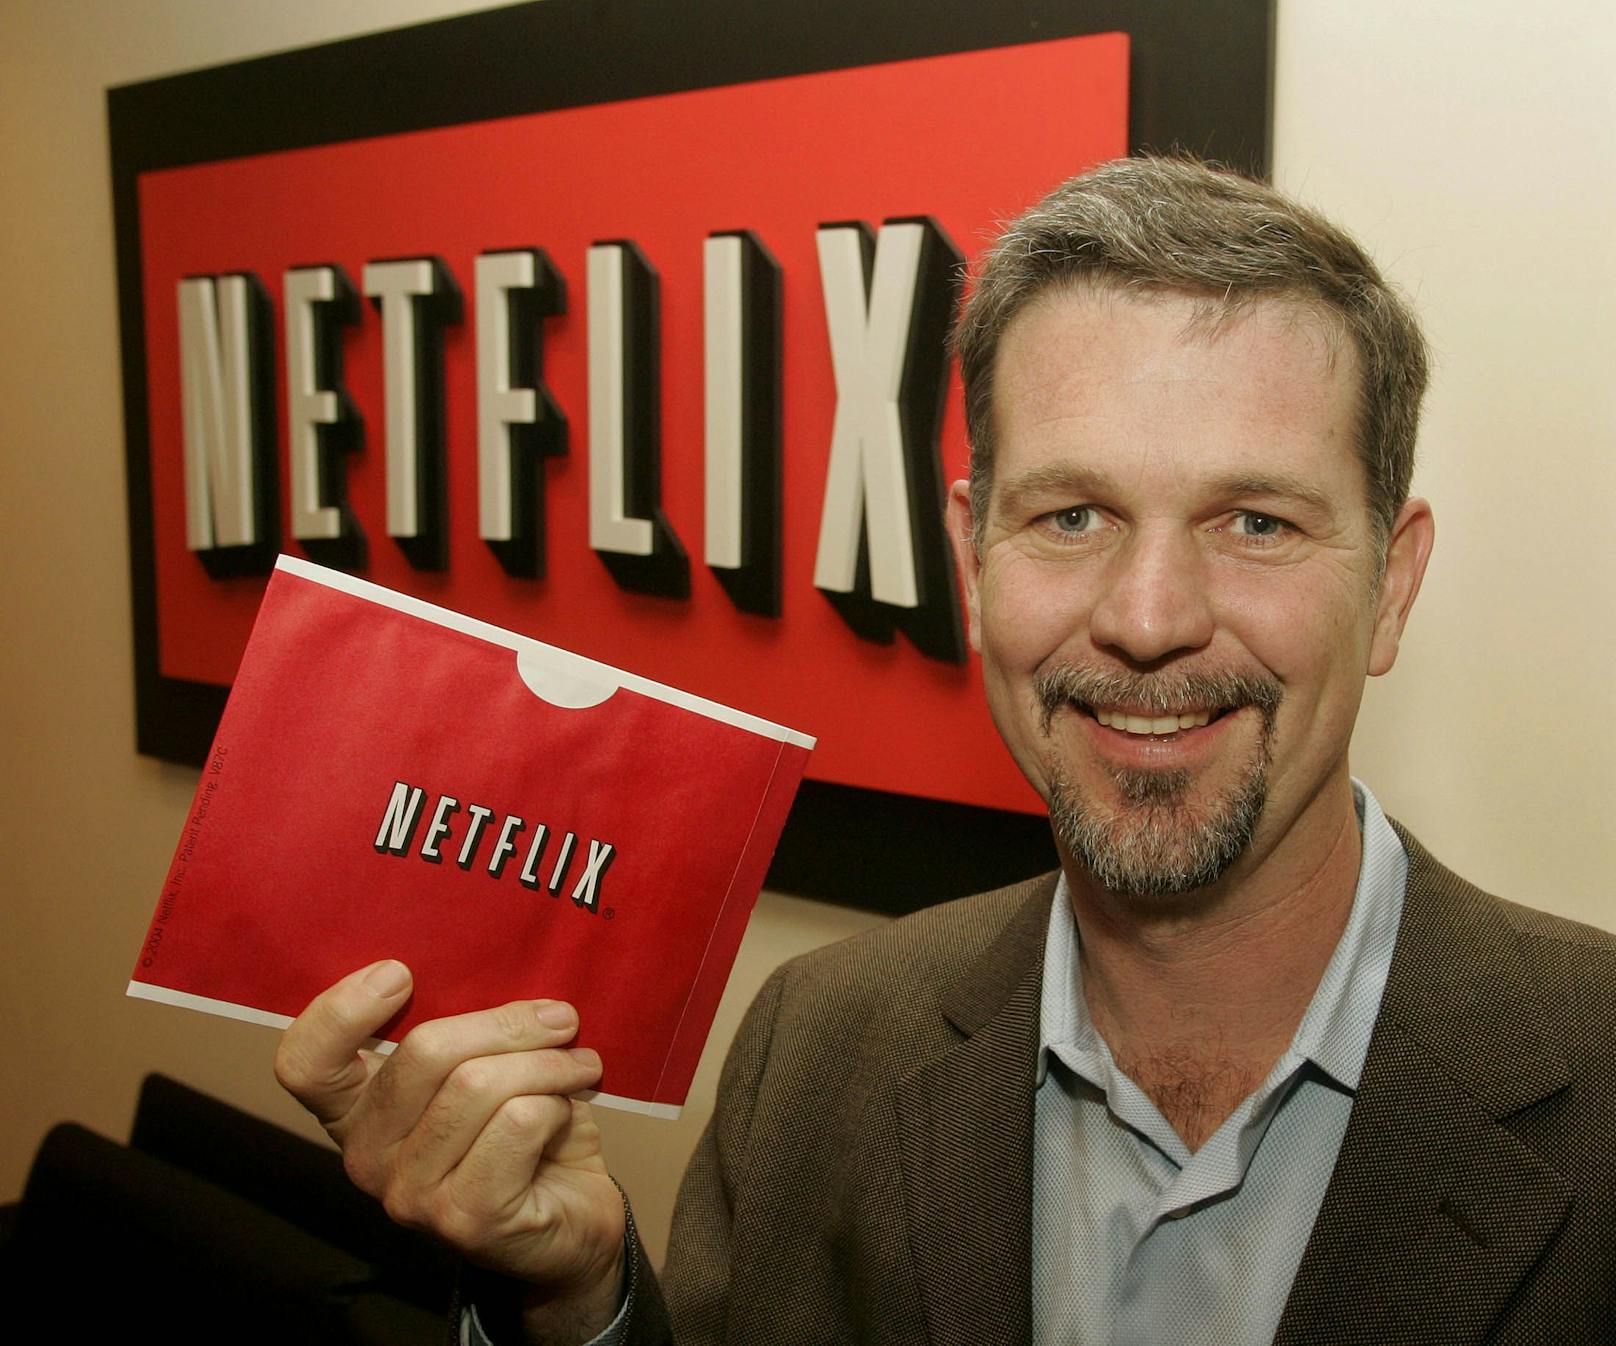 Reed Hastings, einer der Gründer von Netflix, hält in seiner Hand einen der roten Netflix-Umschläge, mit denen die Filme zu den Kunden verschickt wurden.